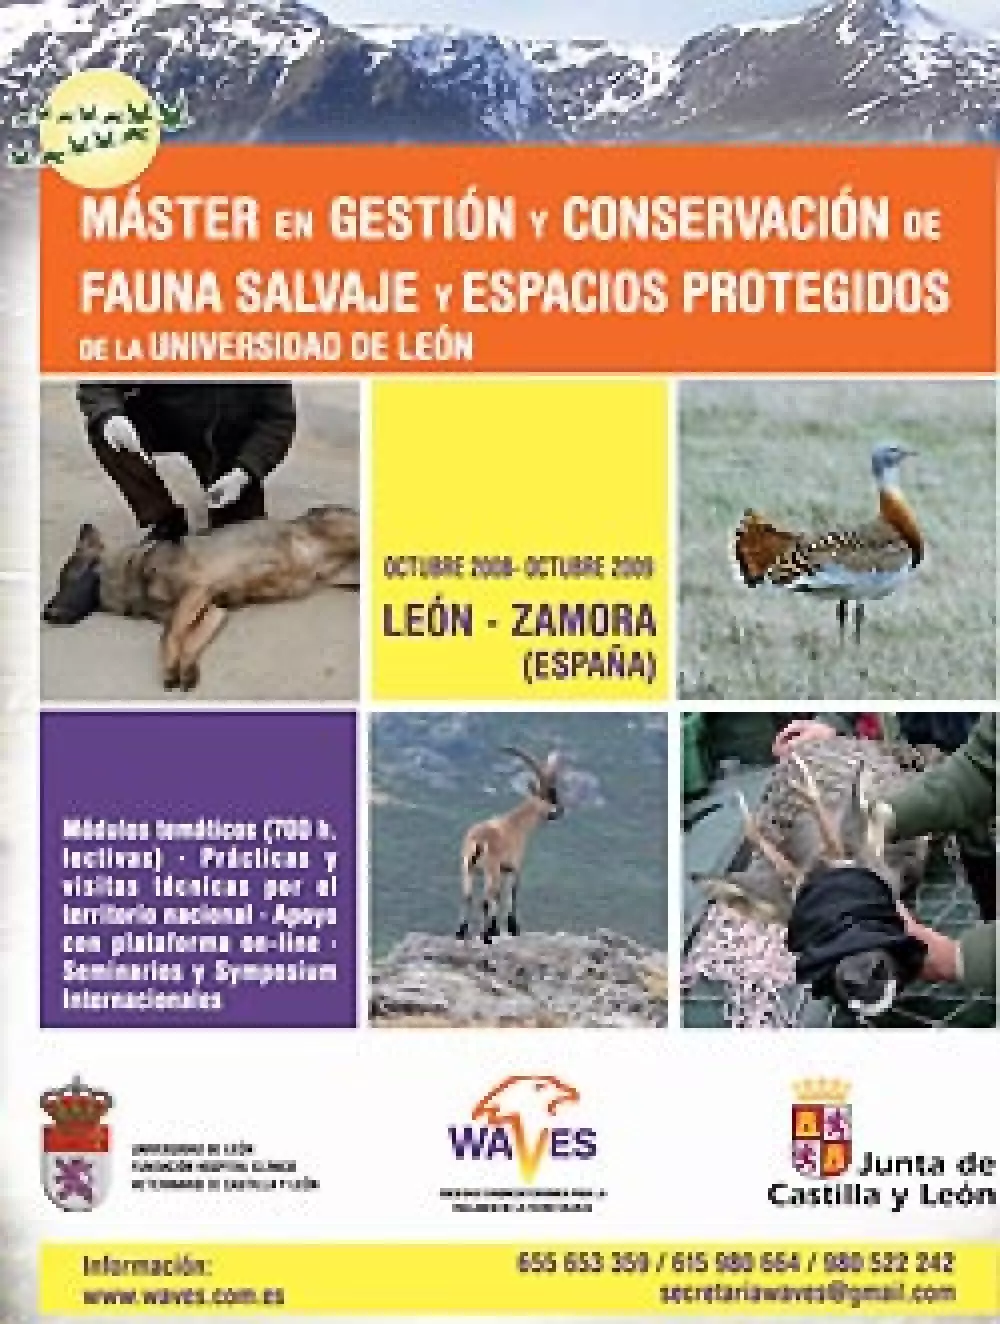 WAVES y la Universidad de León organizan un máster sobre gestión y conservación de fauna salvaje